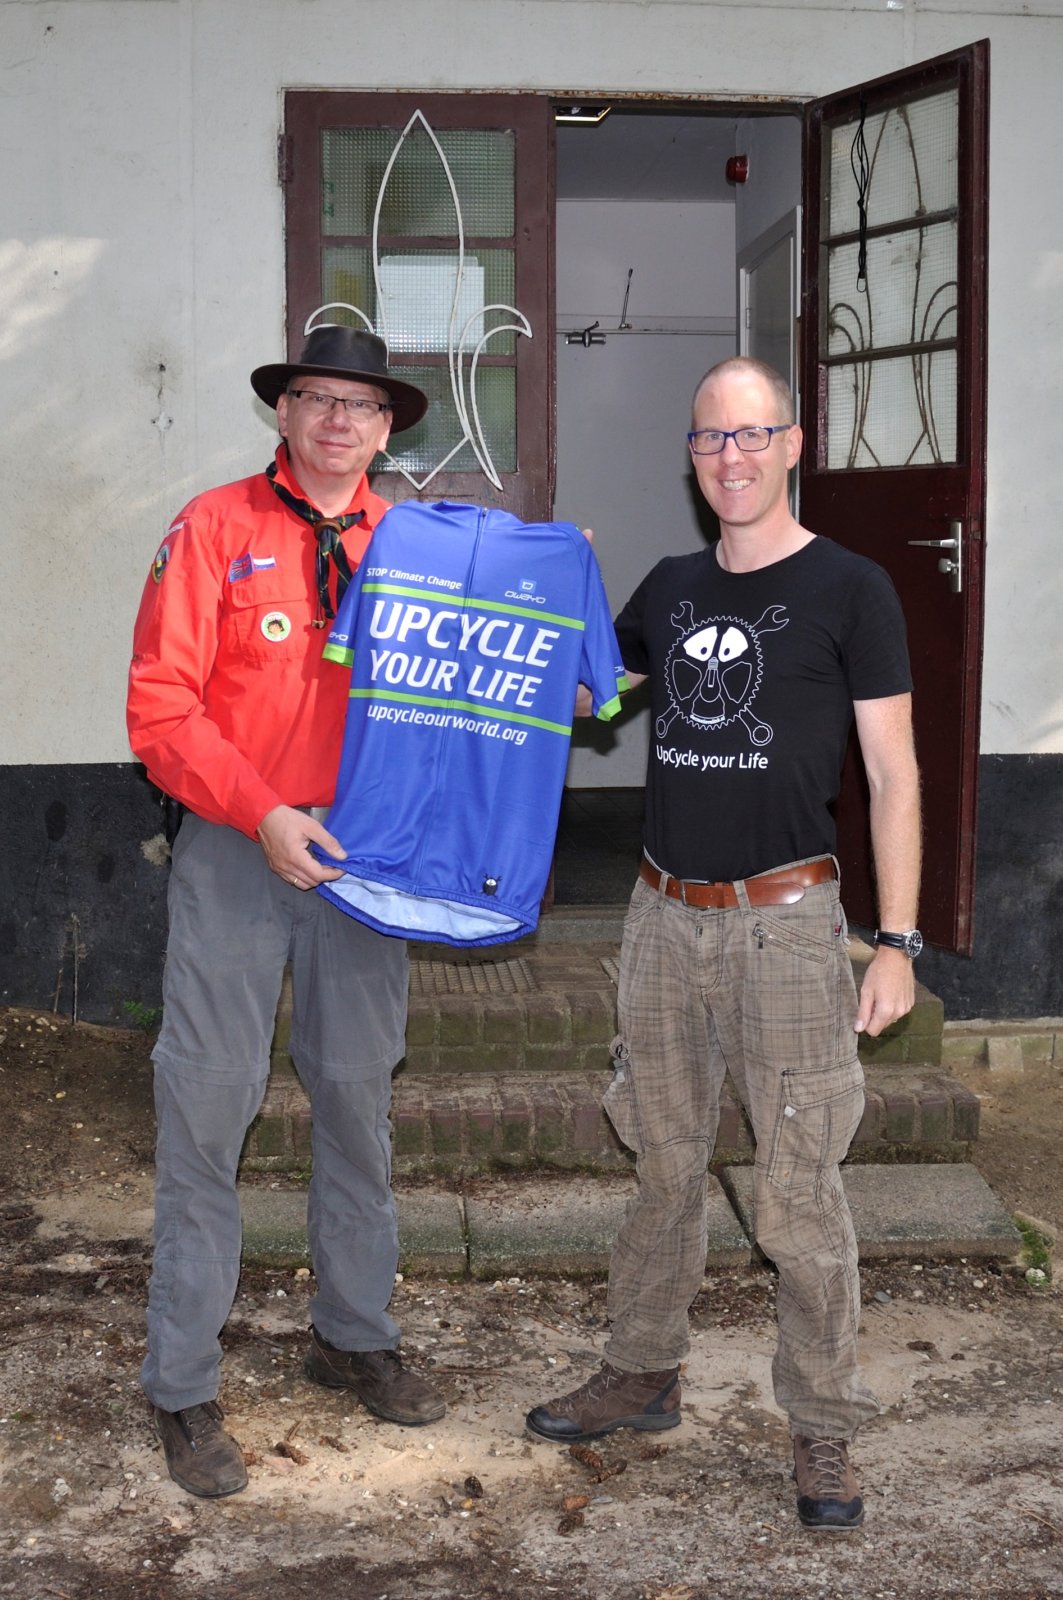 Thijs Verbeek Doet Ook Mee Met De Duurzame Fietsbeweging Cyclingteam Upcycle Your Life!